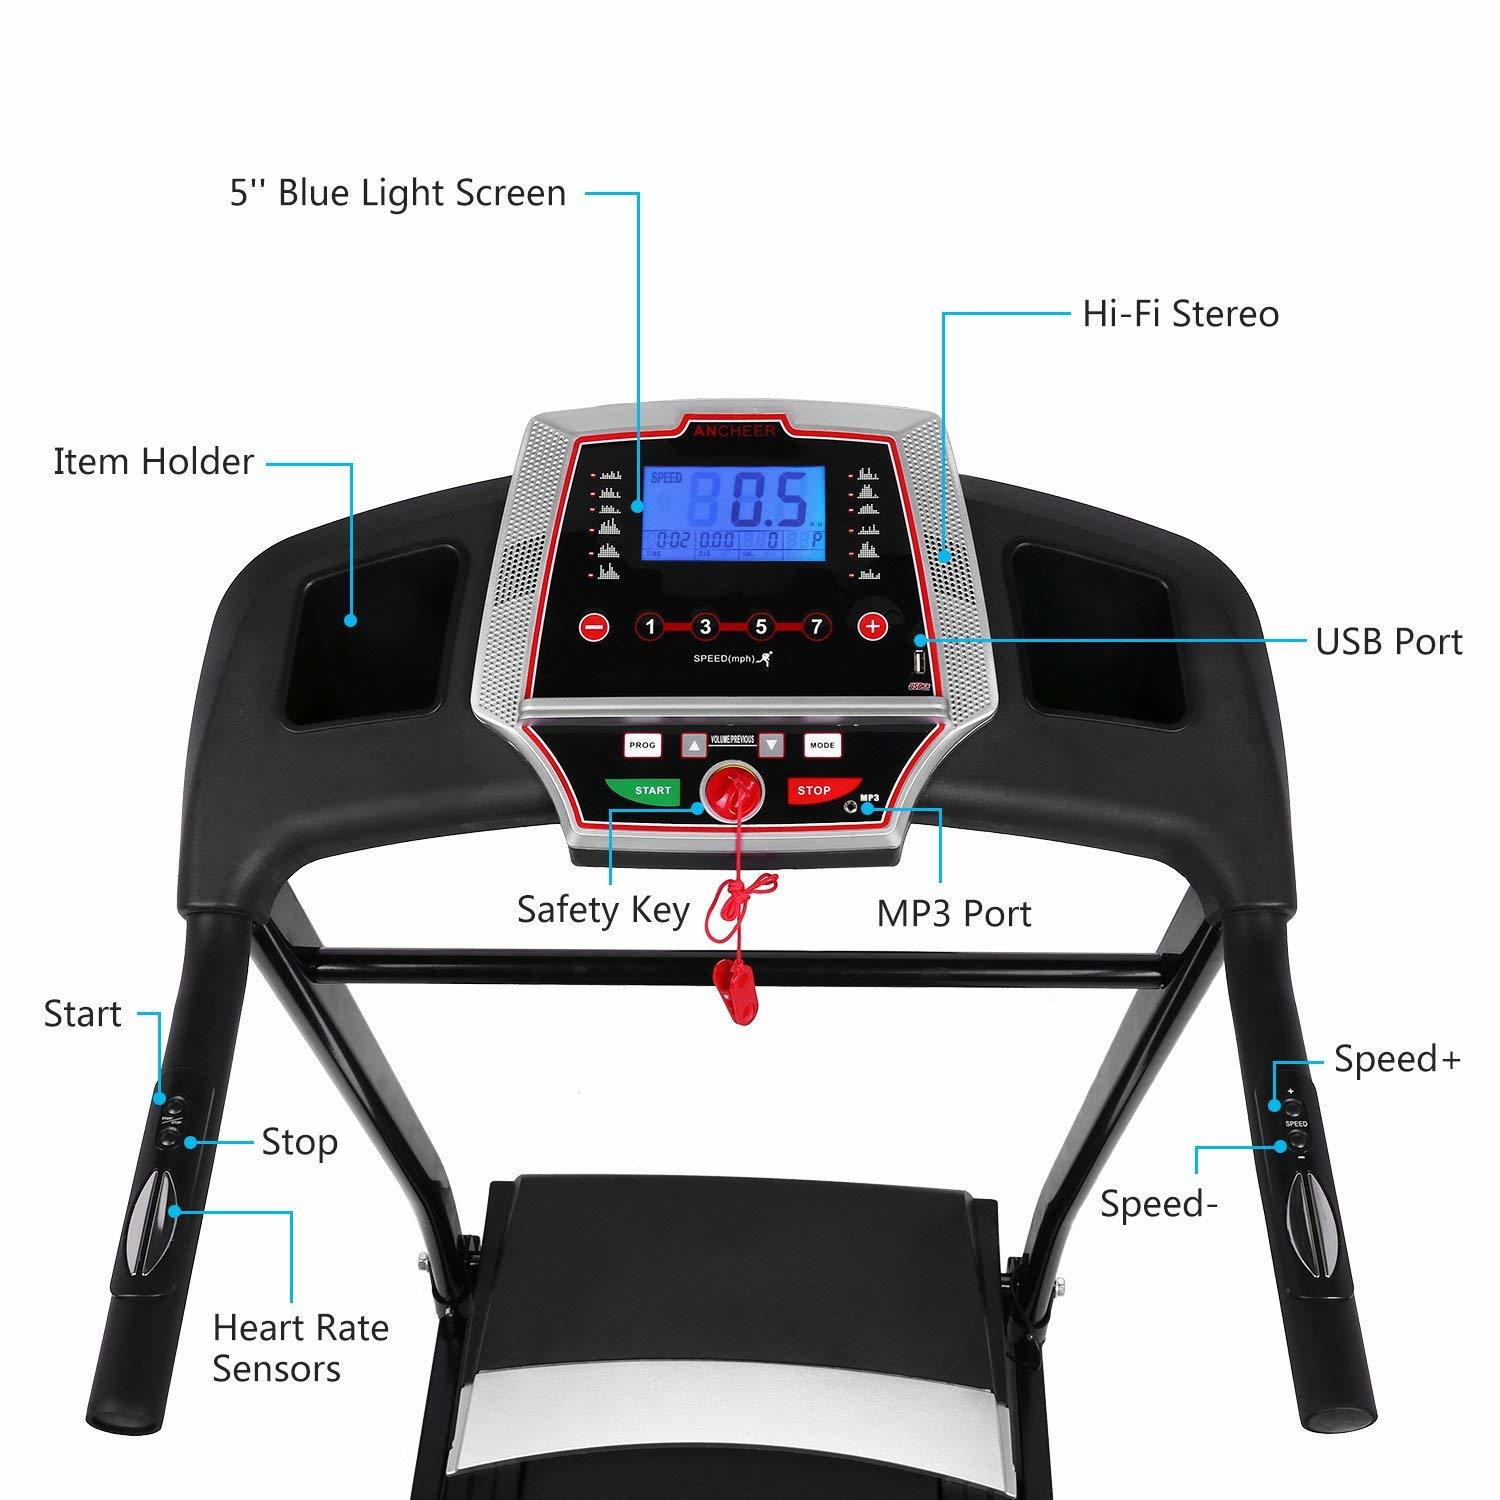 10 best treadmills under $500 & $1000 for home gym 17